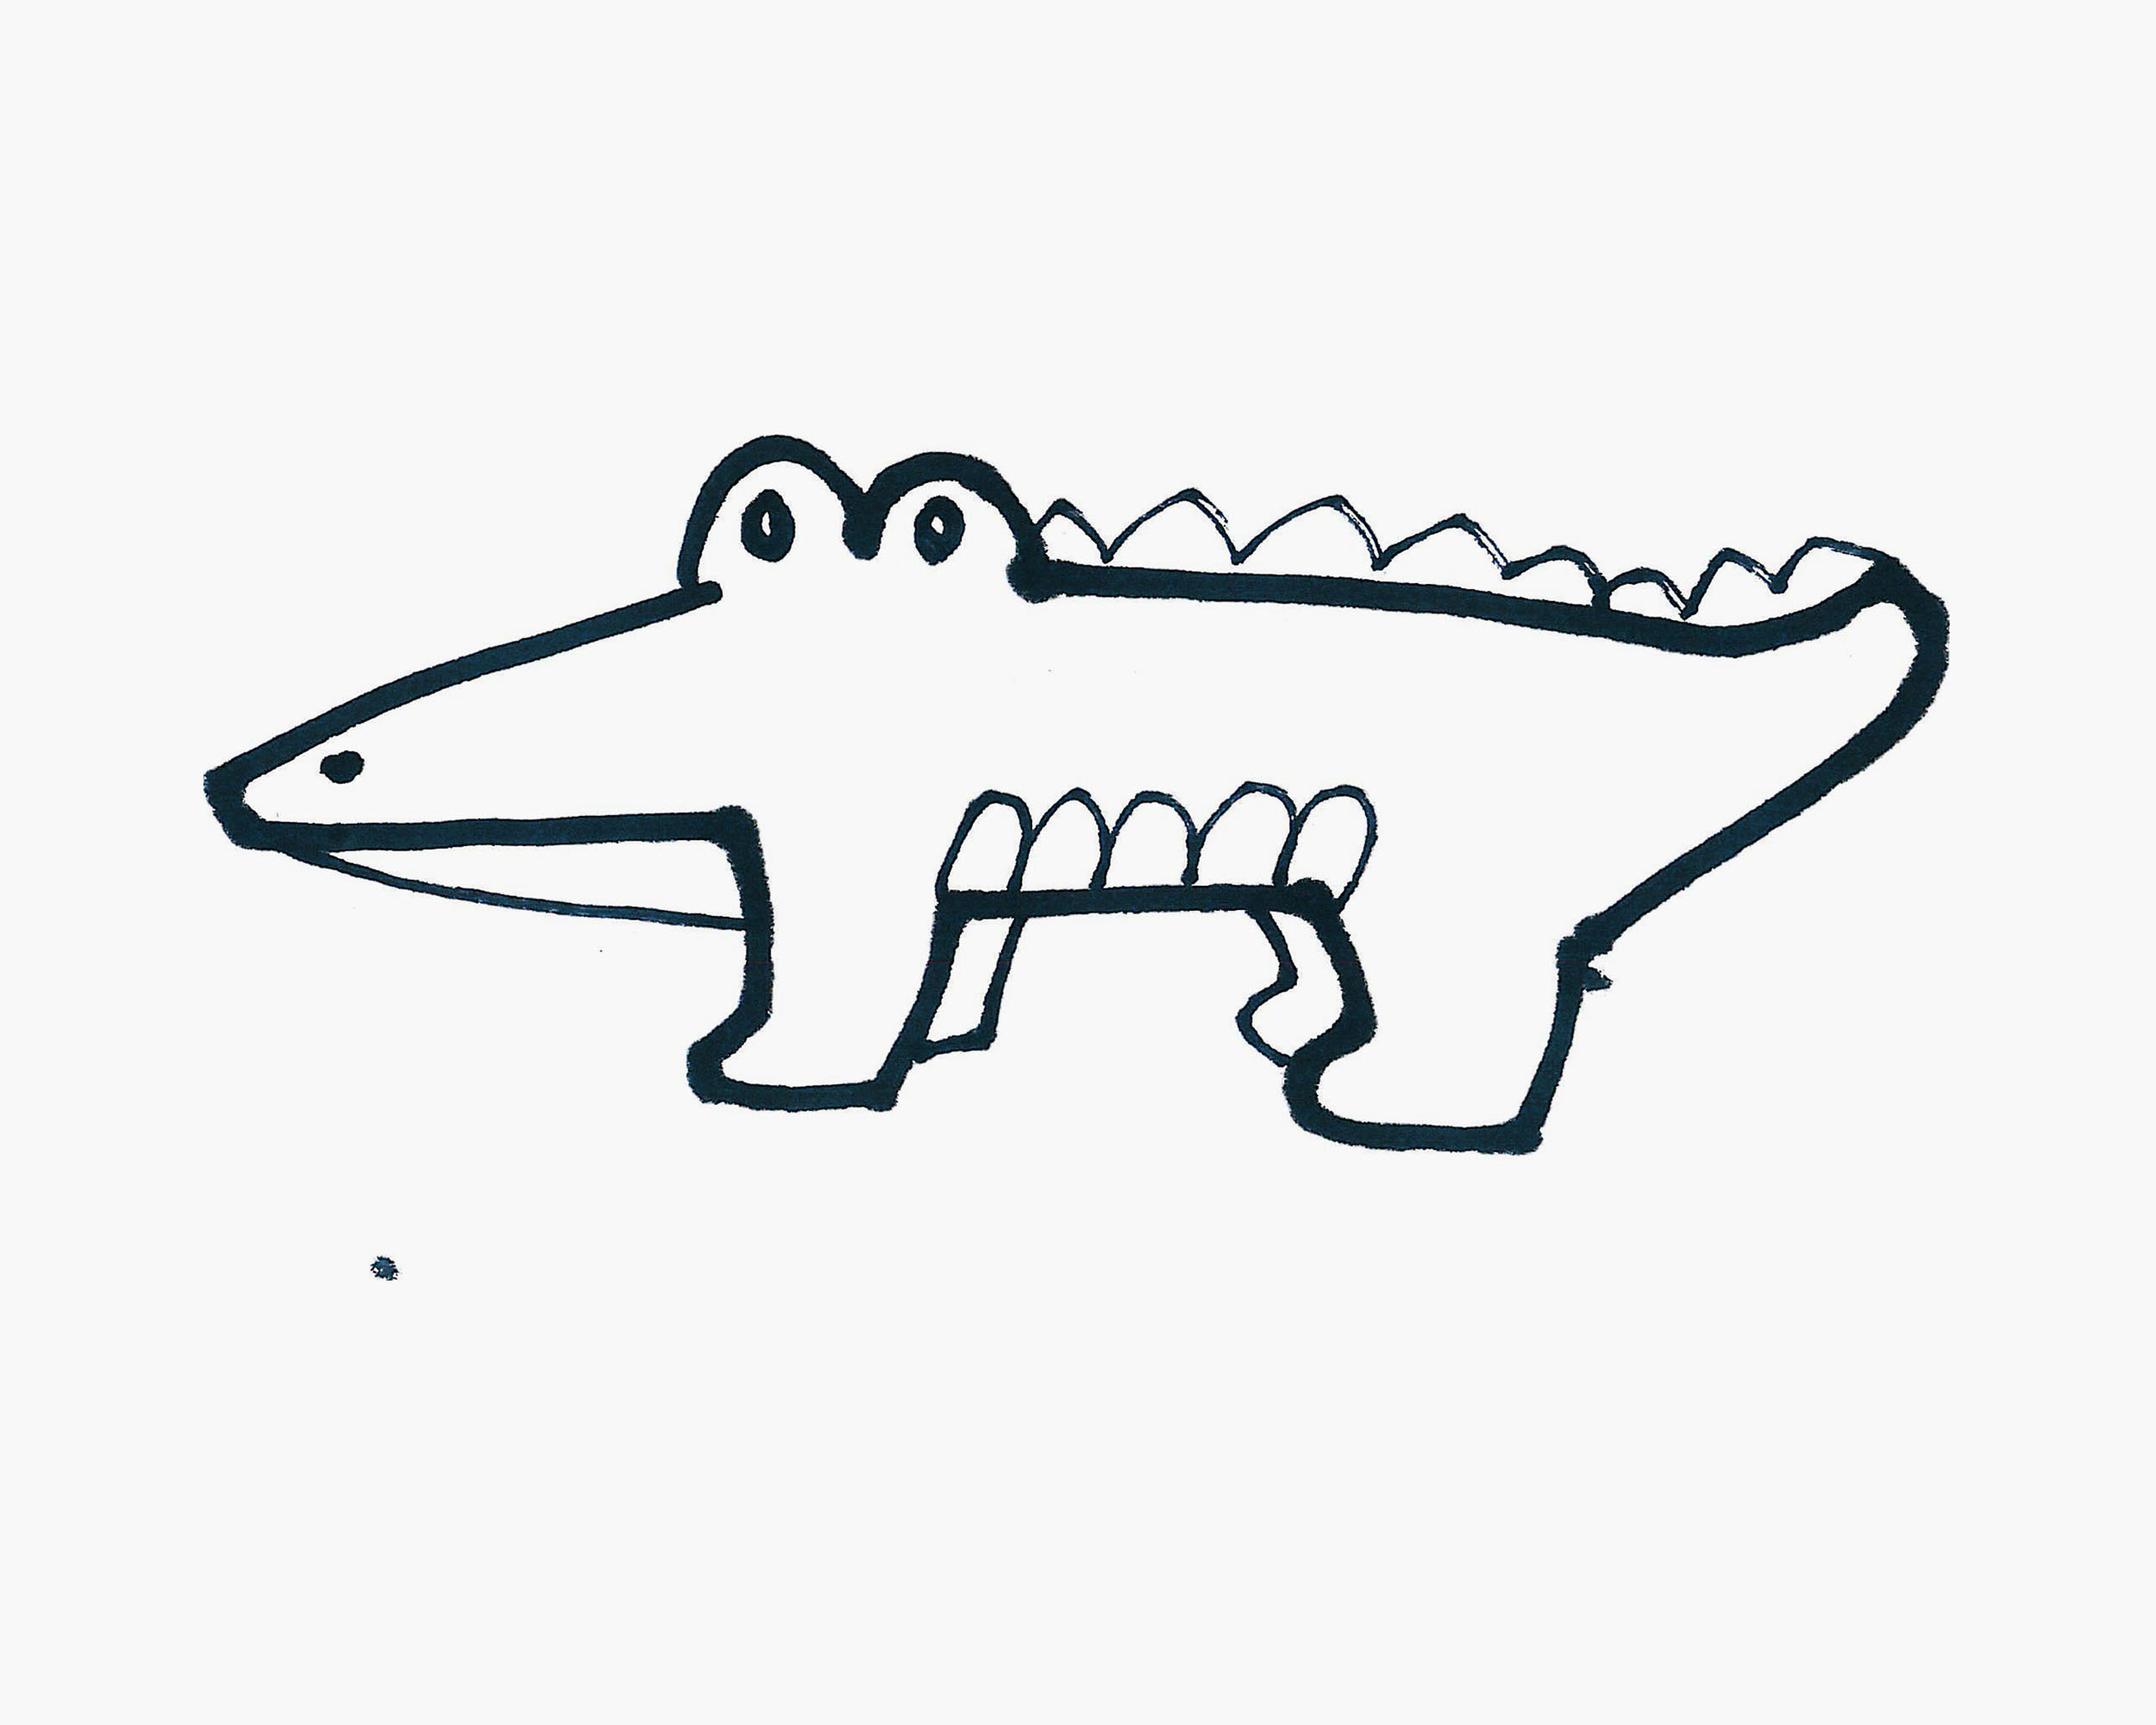 怎样画鳄鱼又像又简单图片